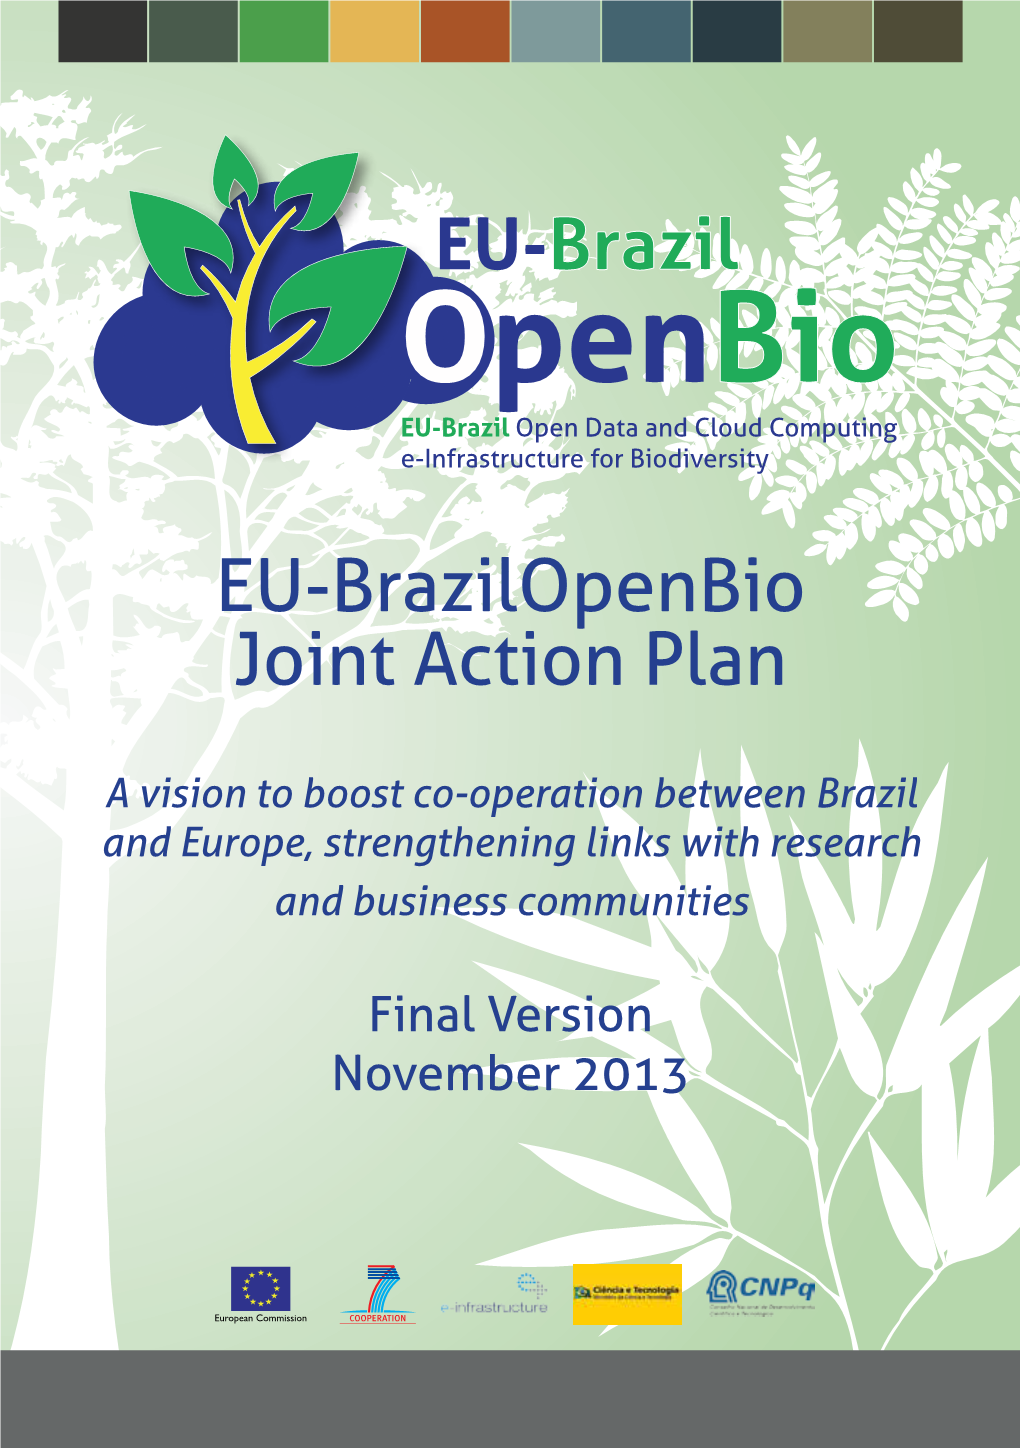 Eubrazilopenbio Joint Action Plan for an Increase in EU